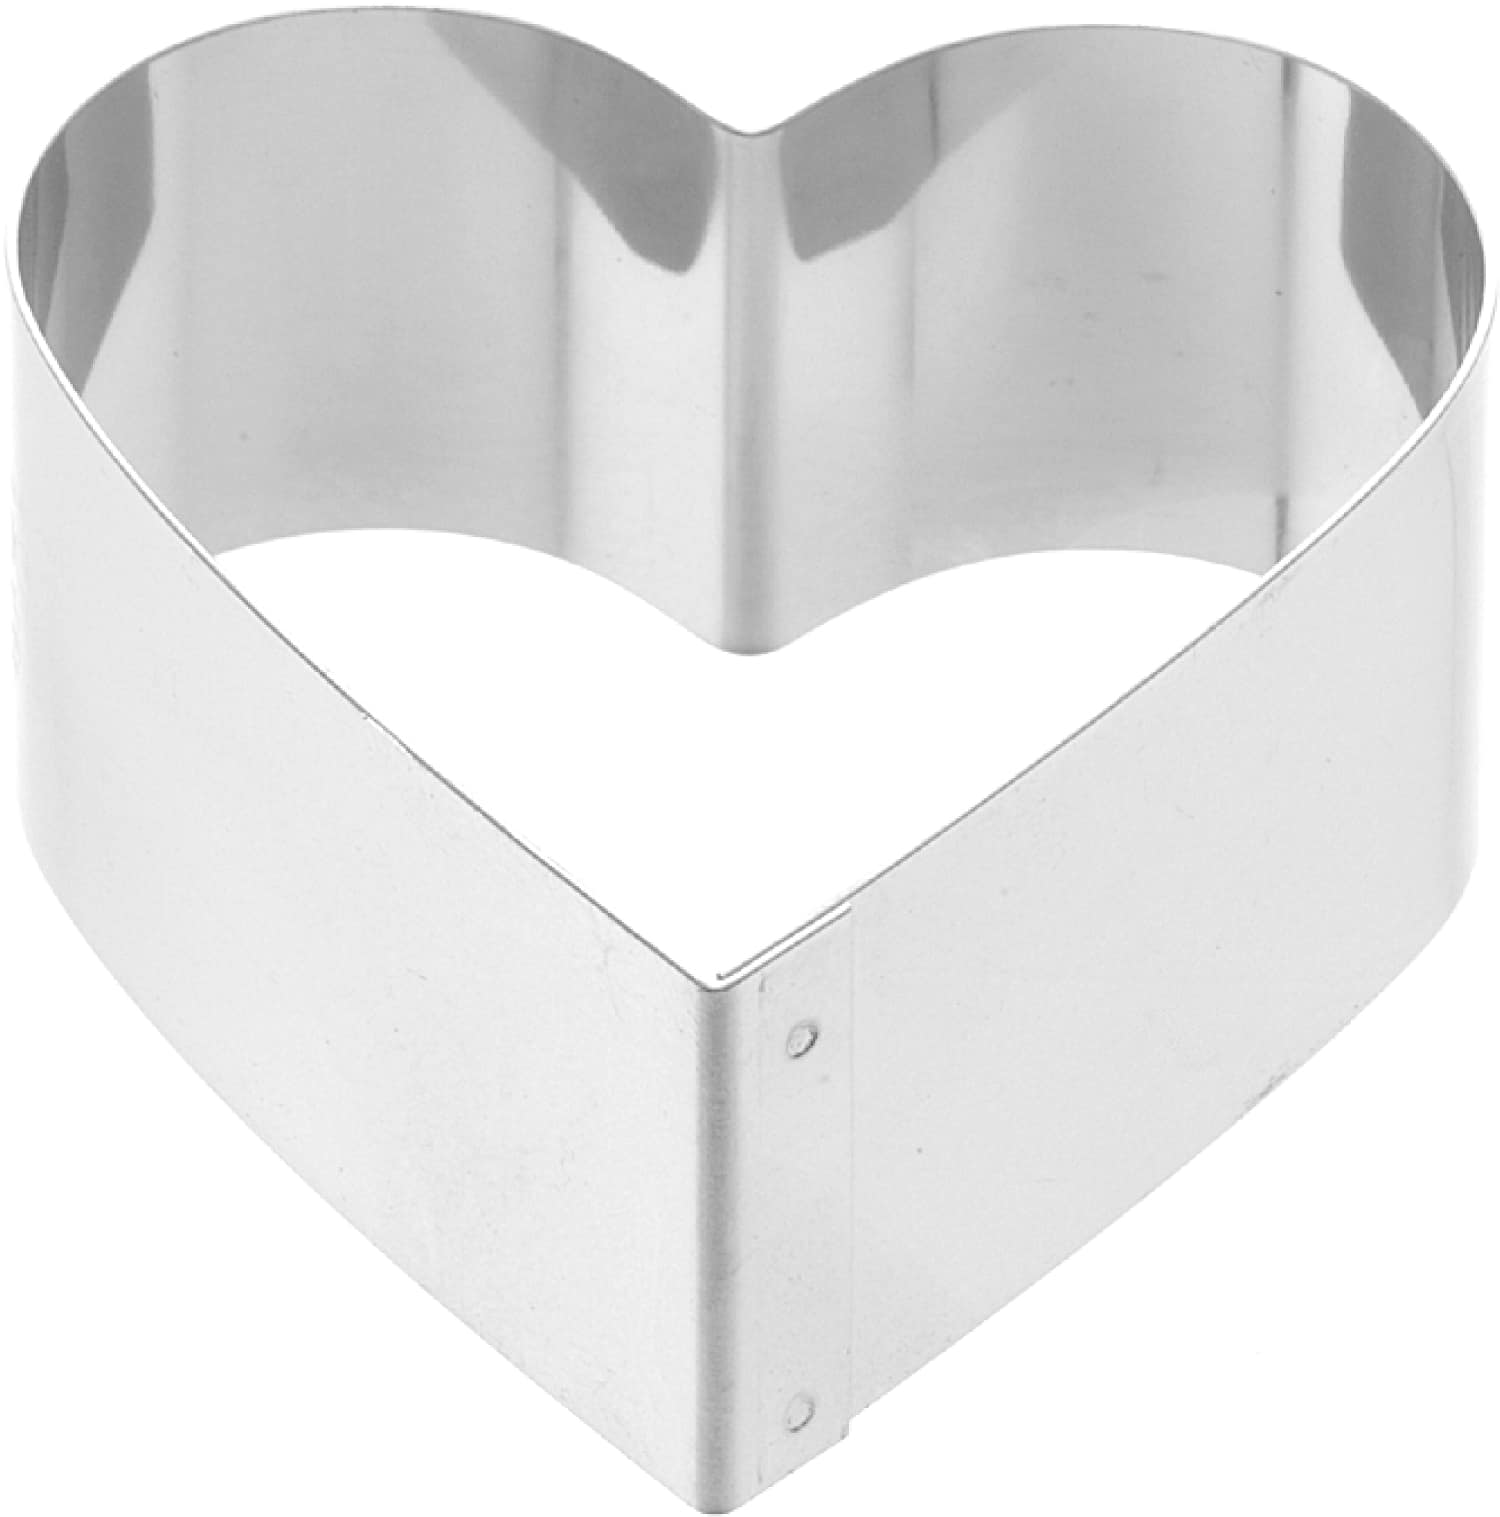 Cutter "heart" 70 x 63 mm stainless steel 